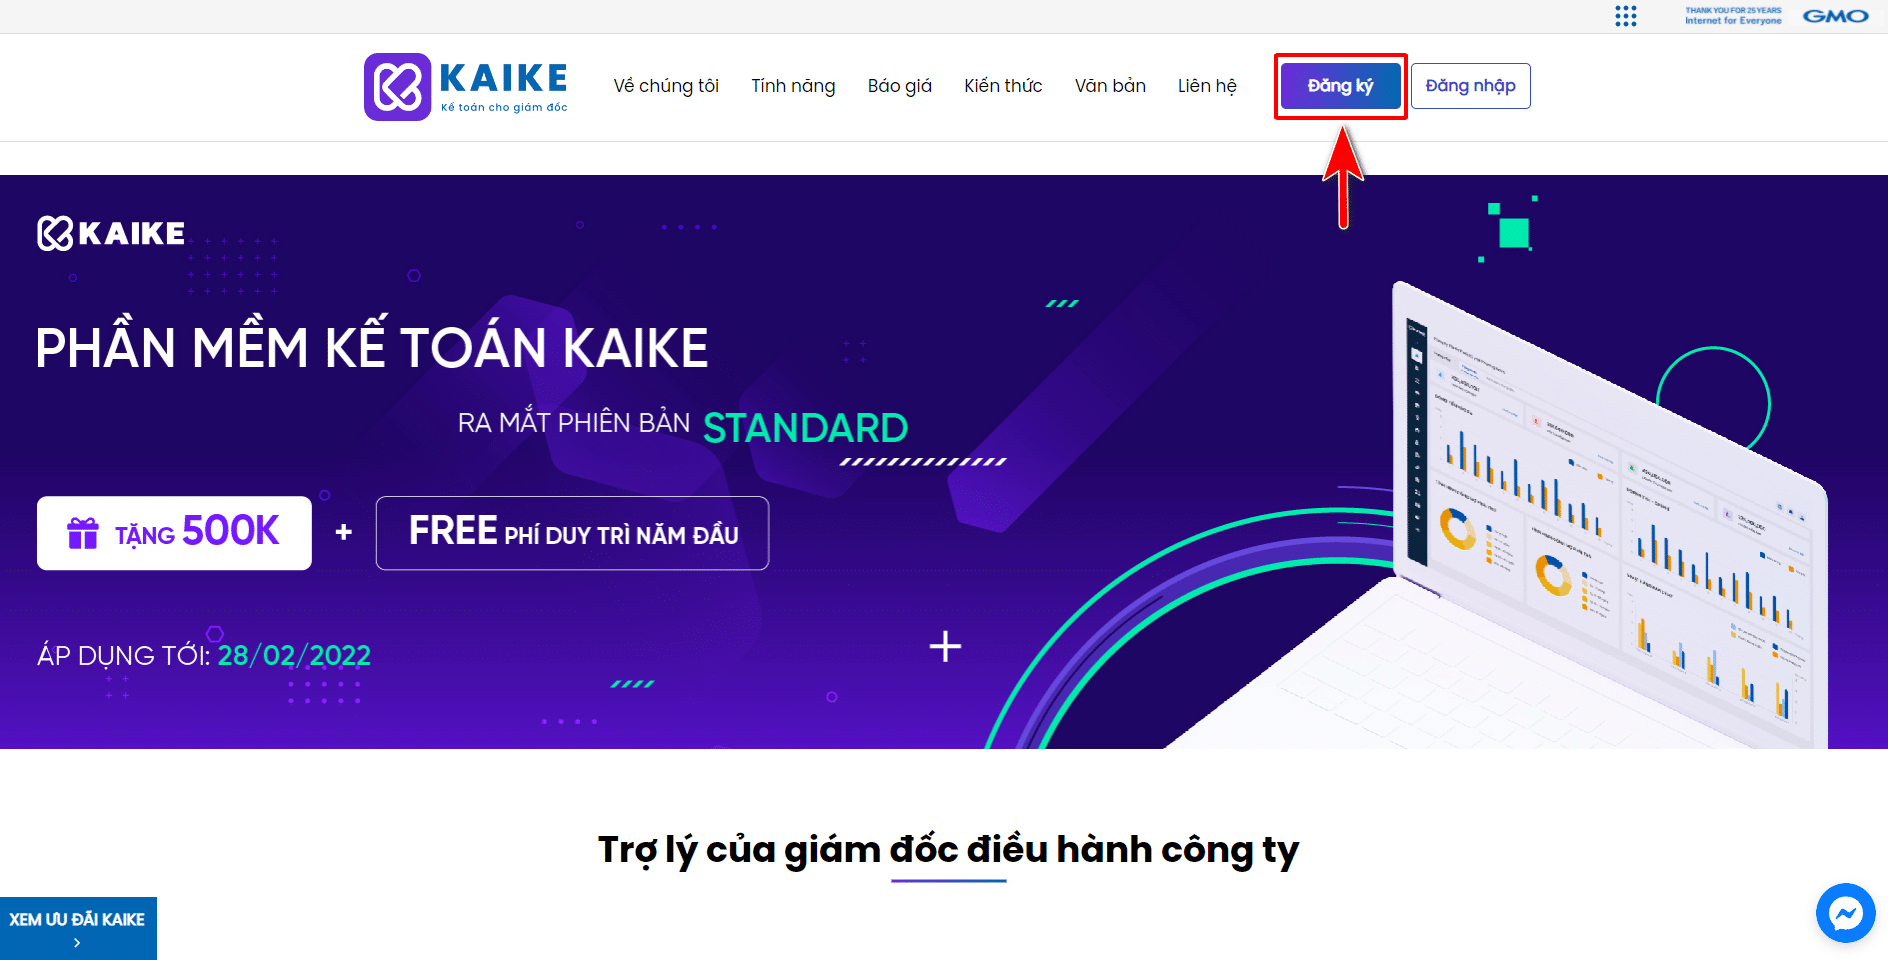 Hướng dẫn đăng ký tài khoản phần mềm kế toán Kaike